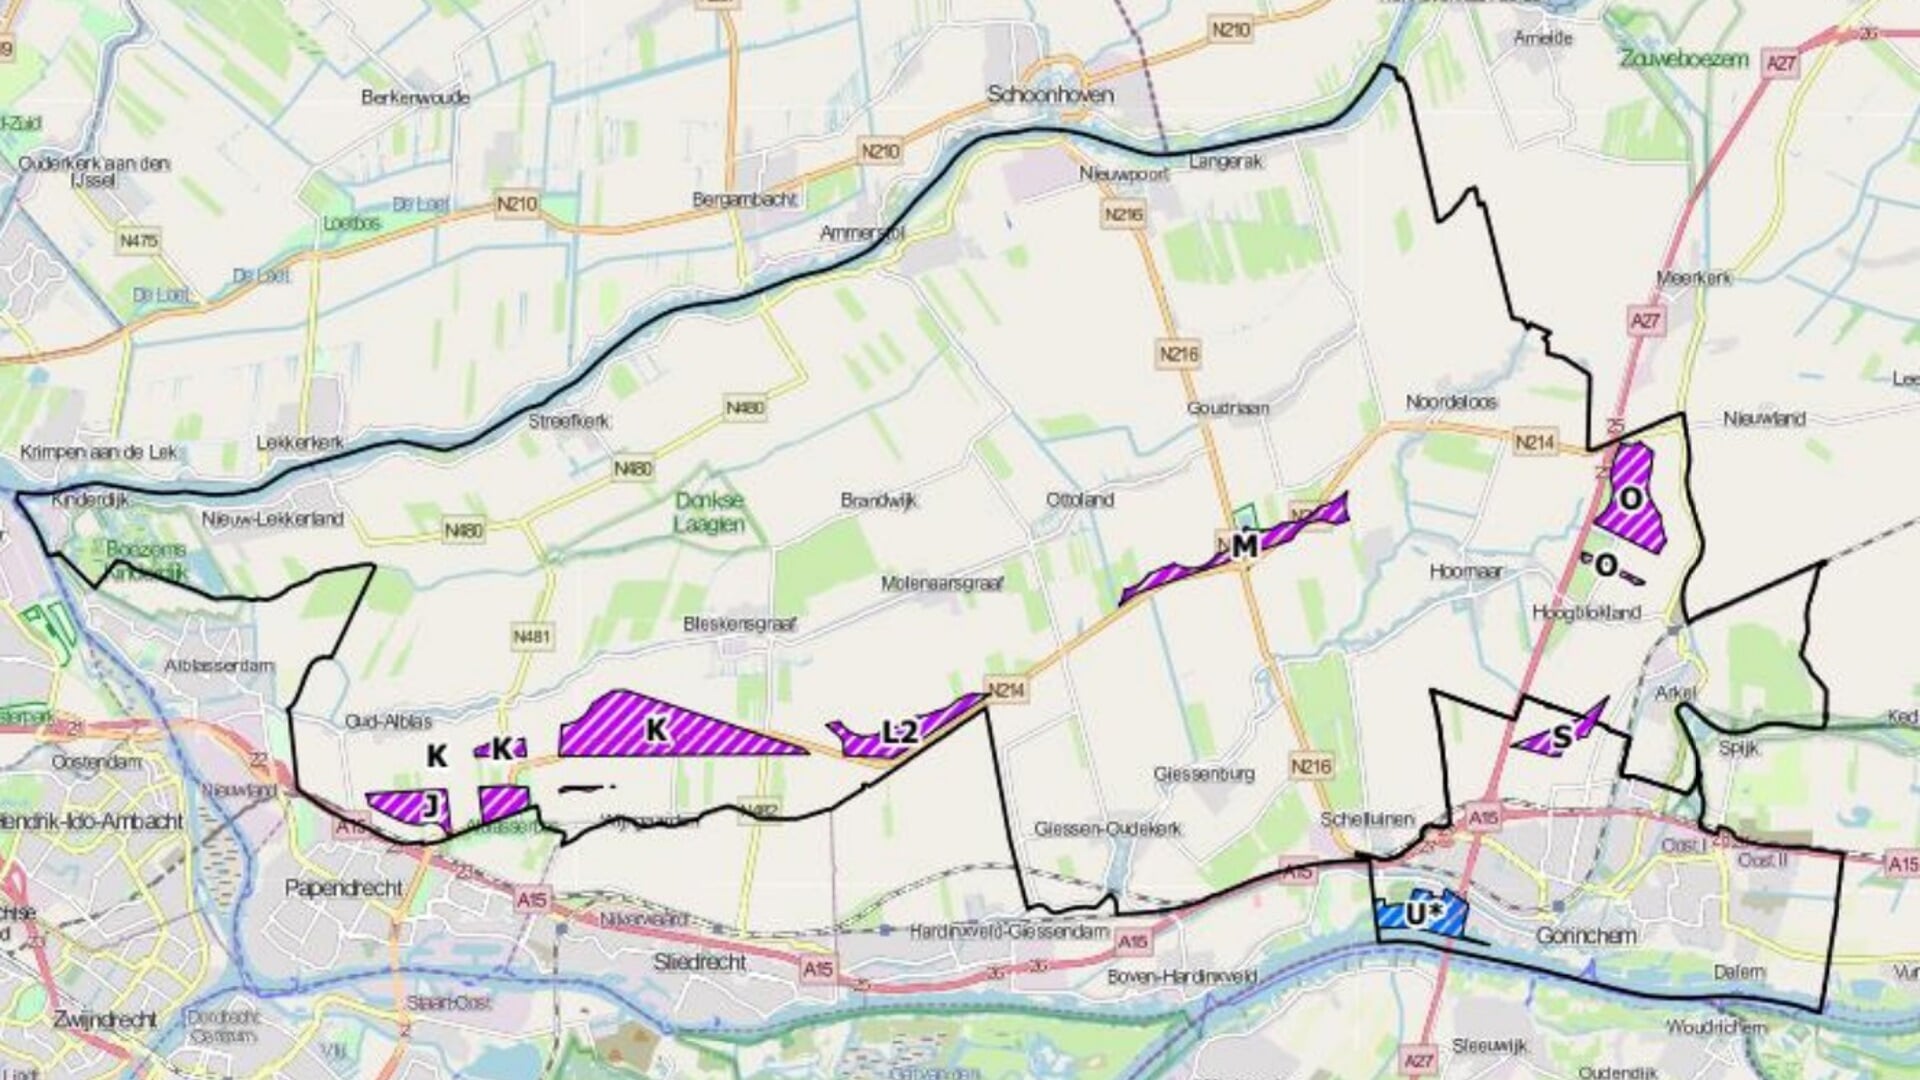 • De paars gearceerde gebieden zijn de mogelijke locaties voor de windmolens. L2 ligt net naast de gemeentegrens met Sliedrecht.